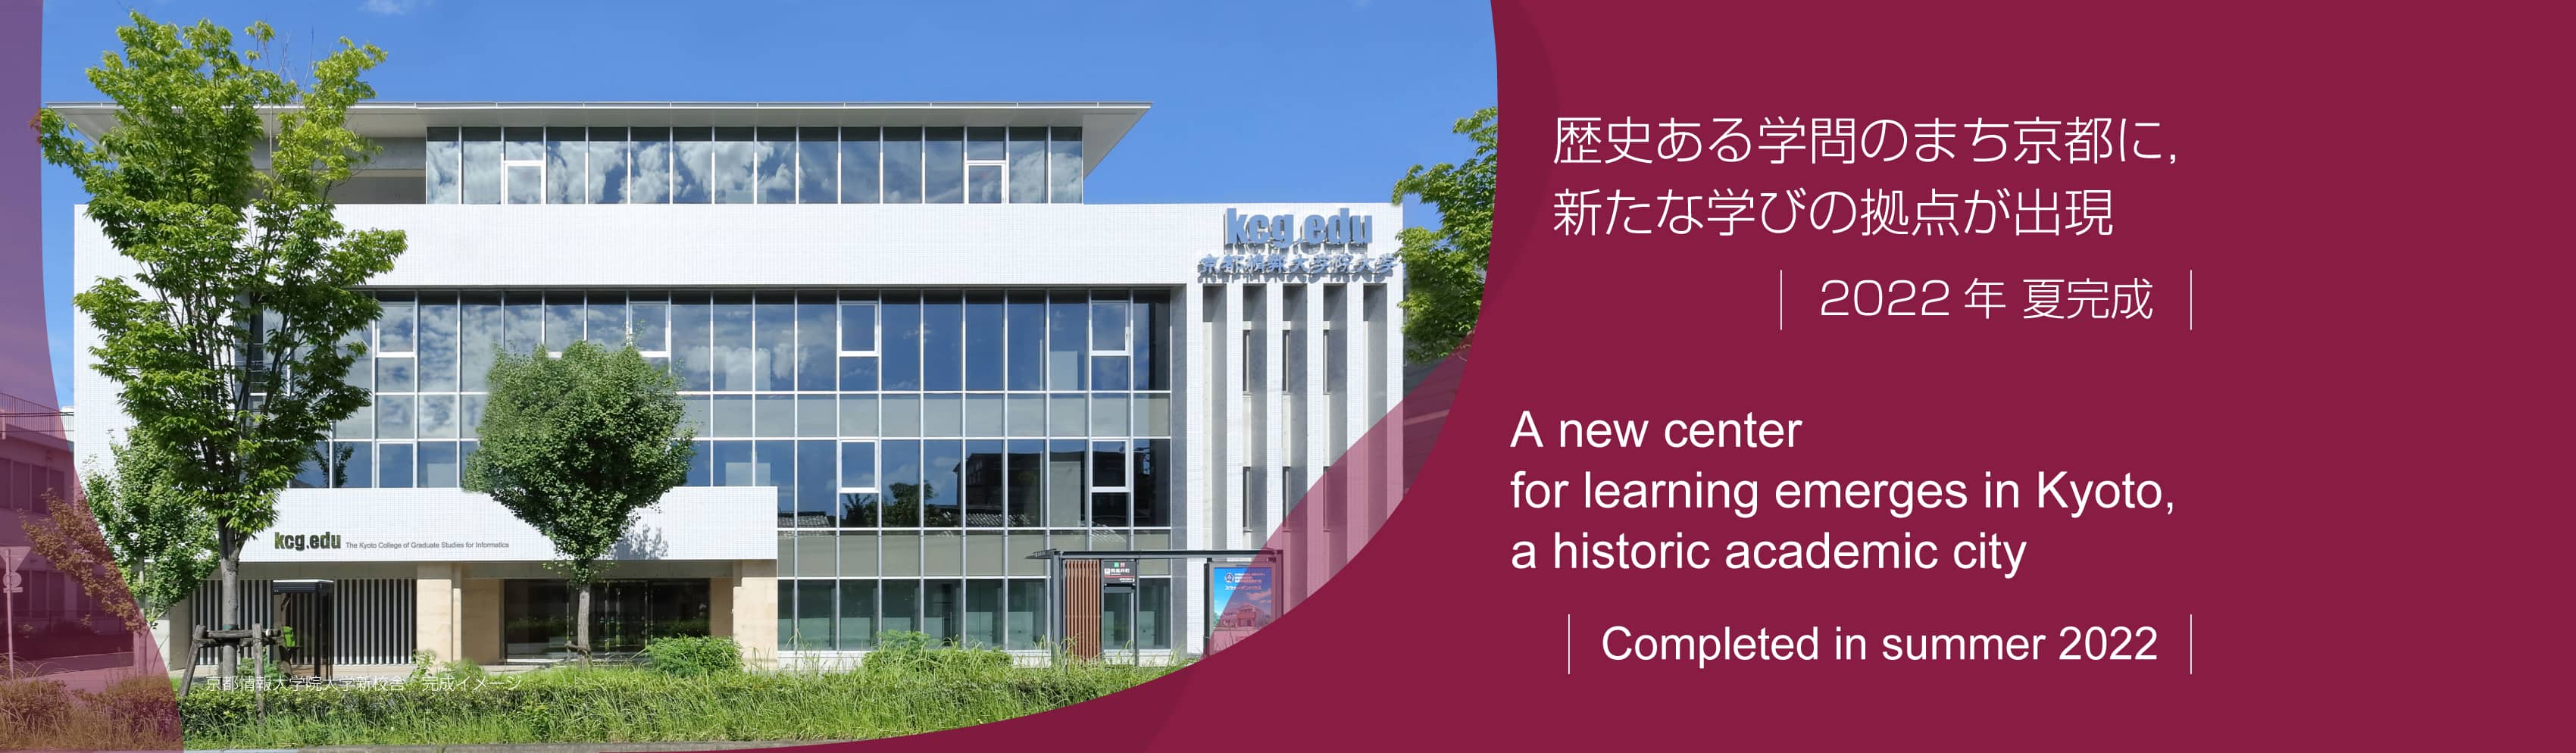 歴史ある学問のまち京都に，新たな学びの拠点が出現